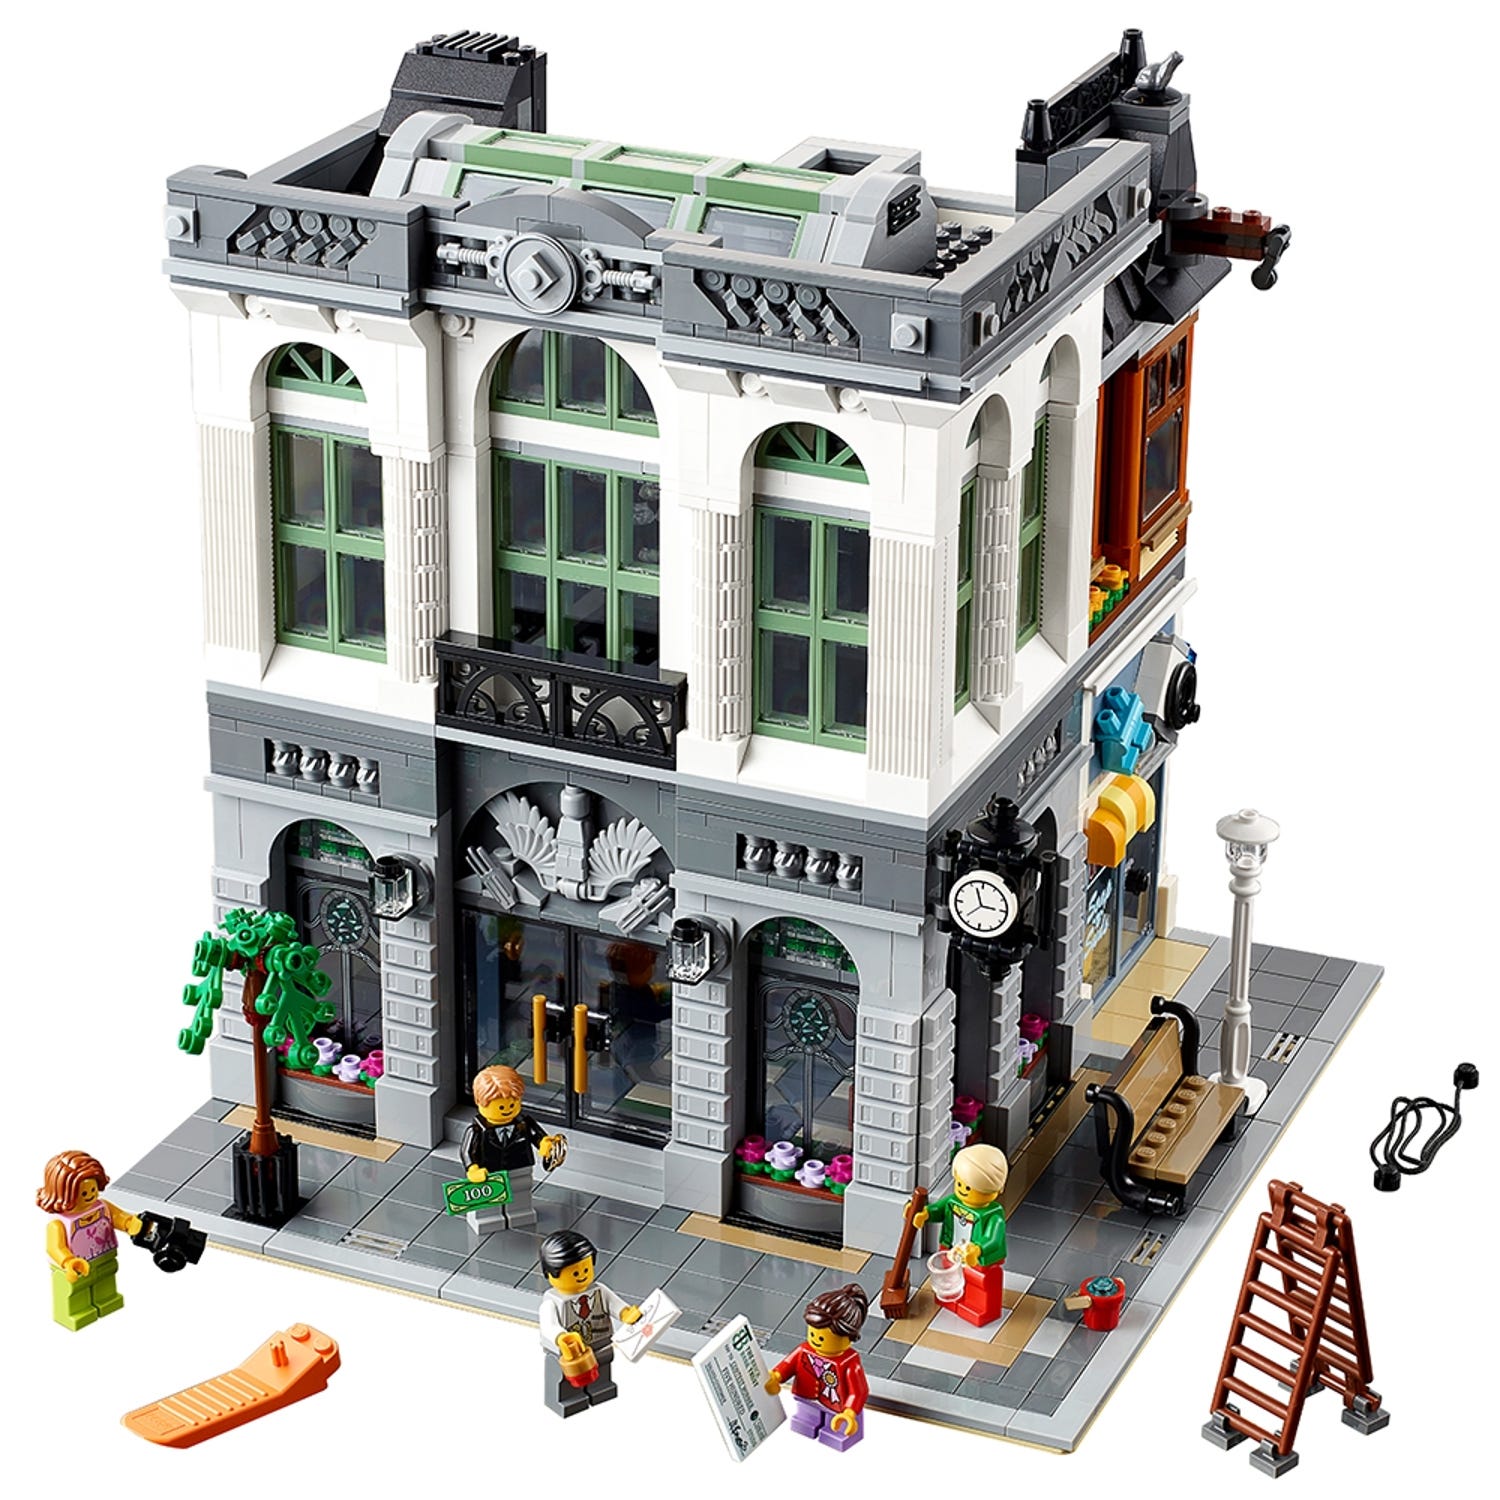 grådig Overgivelse transaktion Brick Bank 10251 | Creator Expert | Buy online at the Official LEGO® Shop US